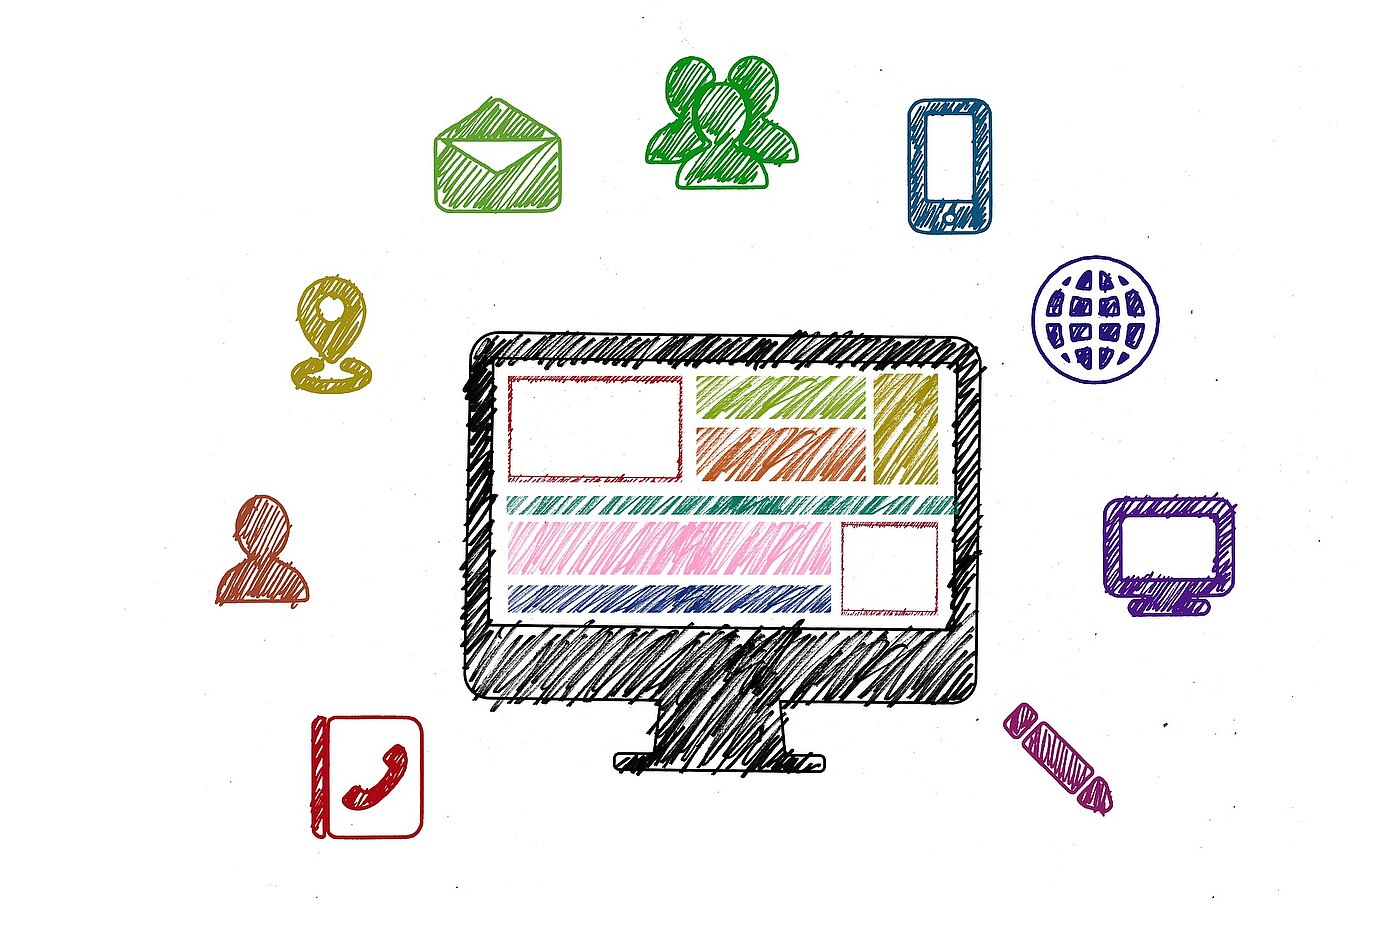 Illustration mit technisches Symbolen für Laptop, Handy, E-Mail etc.